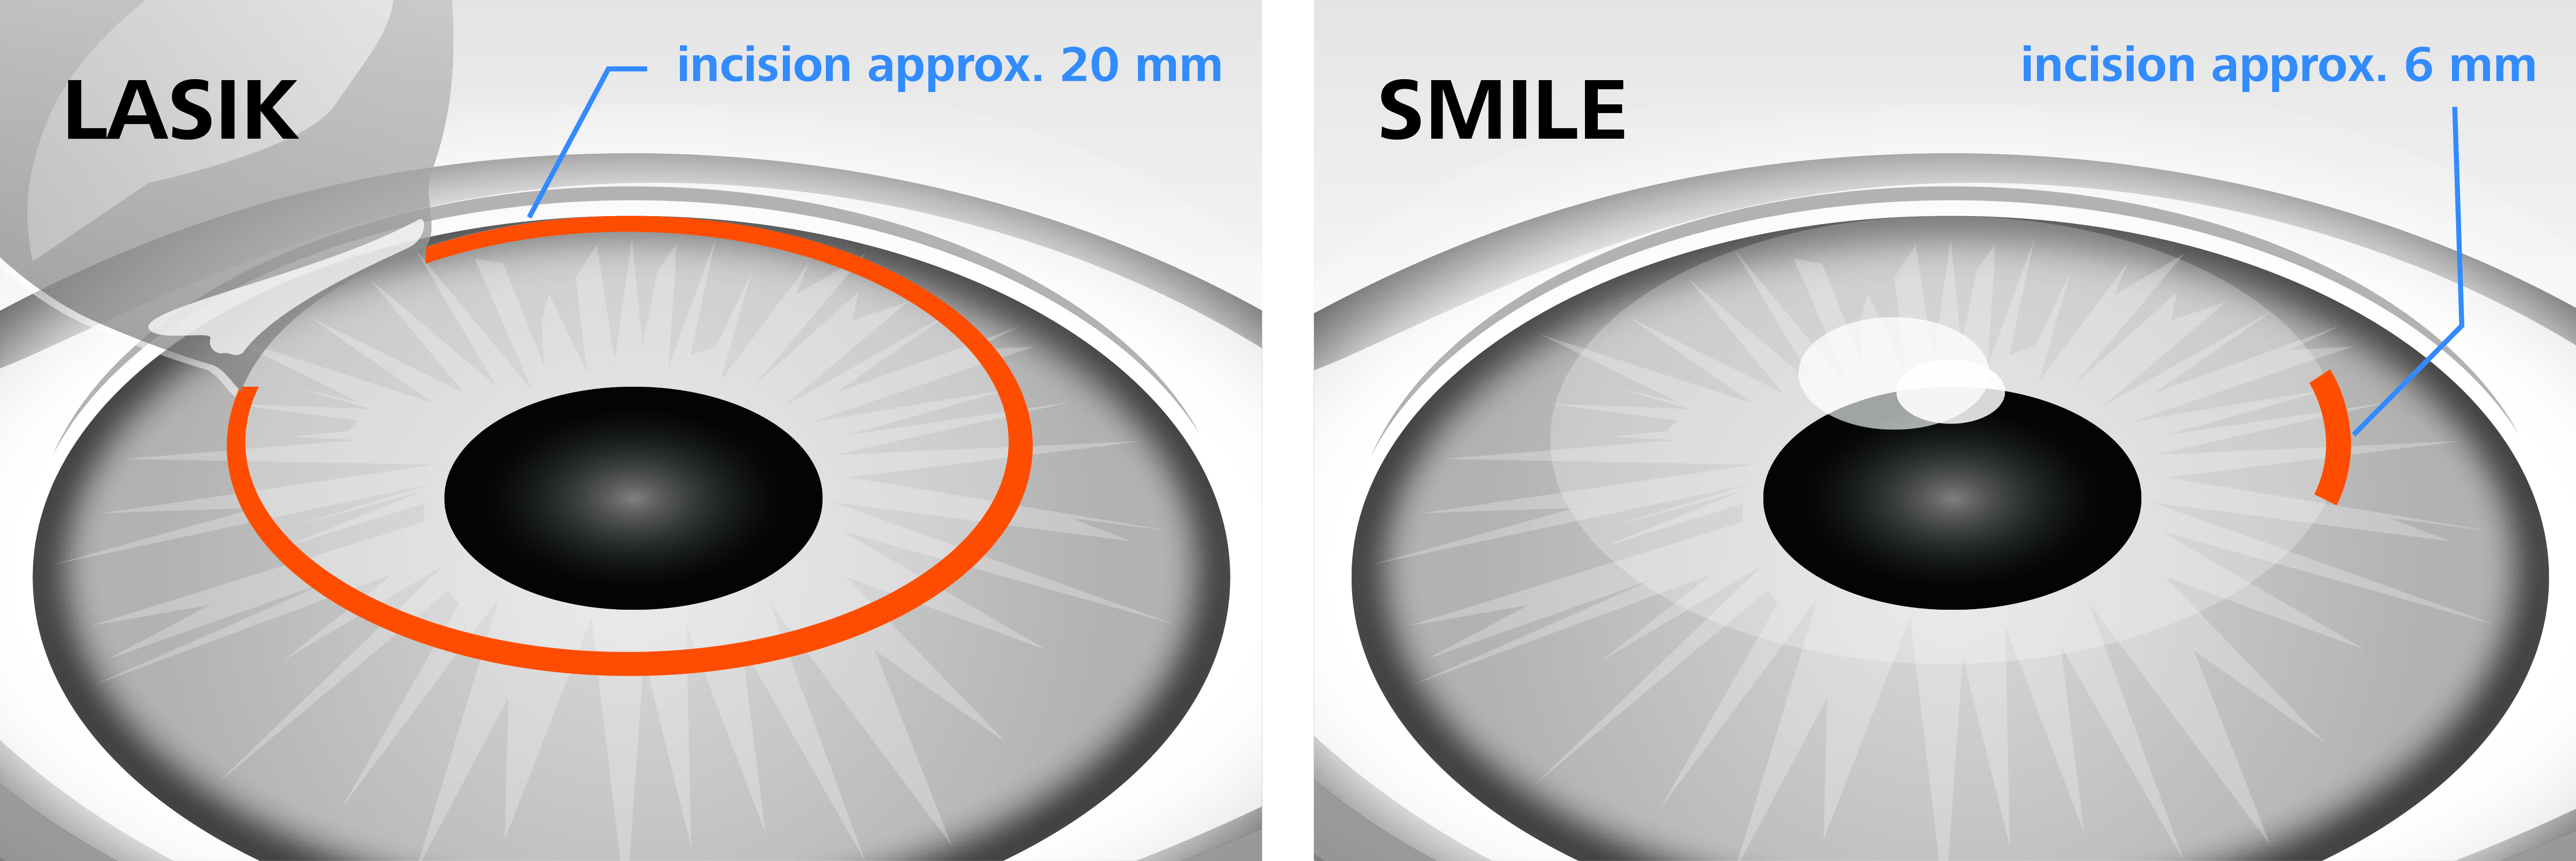 Коррекция зрения методом смайл. Метод ласик лазерная коррекция. Лазерная коррекция зрения метод Фемто ласик. Операция Femto LASIK И smile. RELEX smile лазерная коррекция зрения.